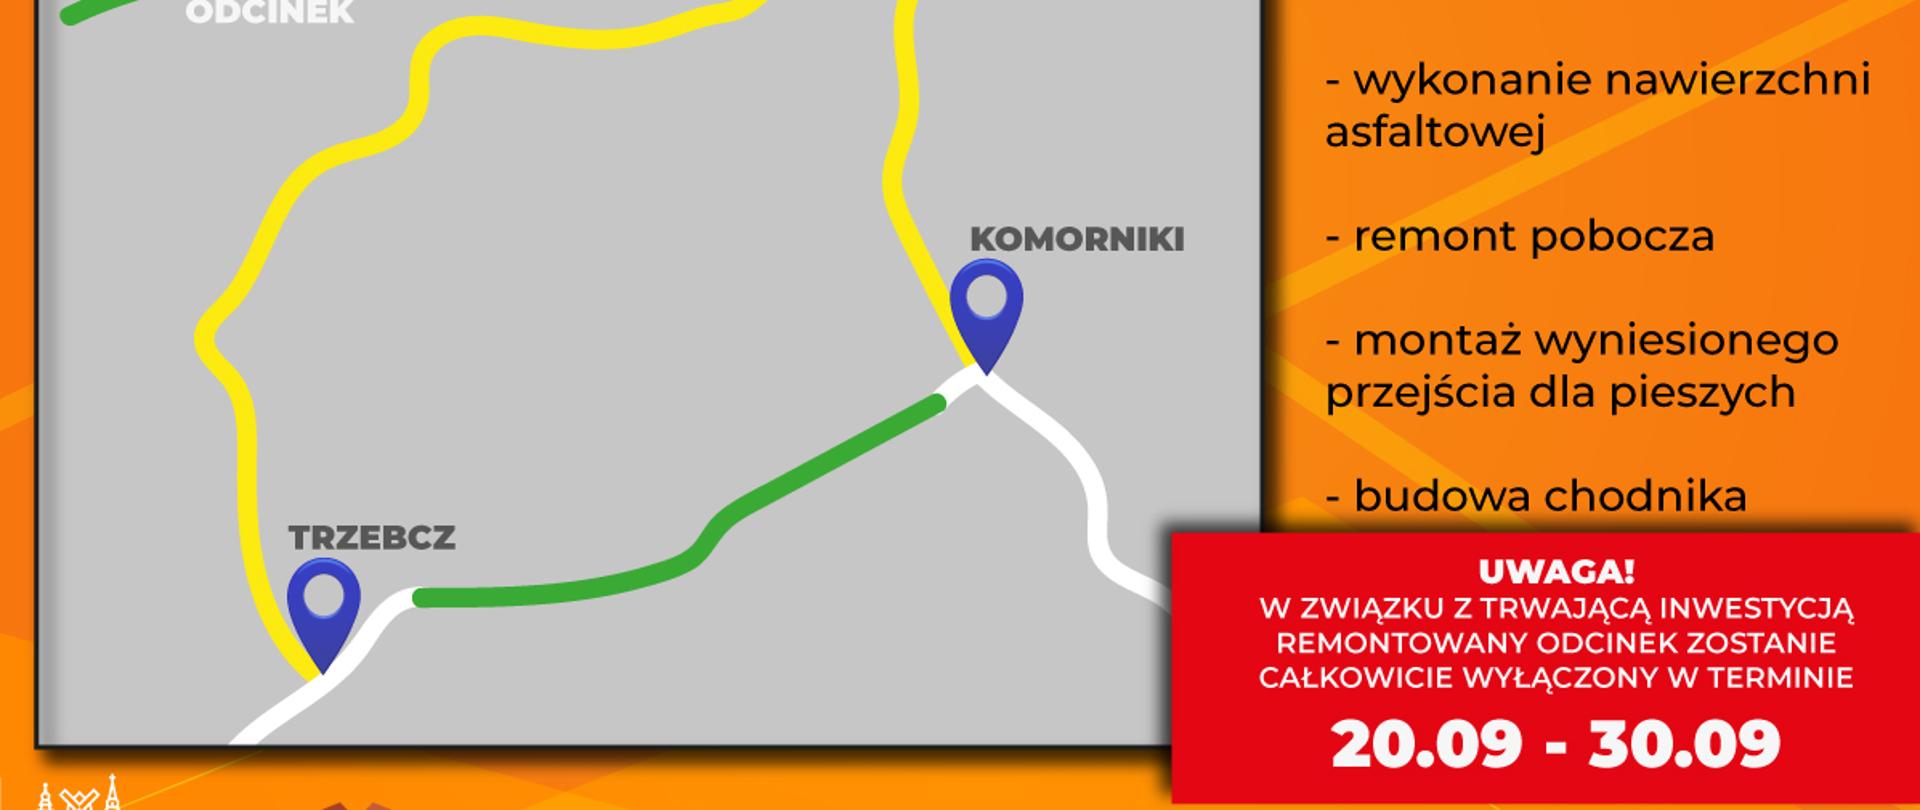 Na pomarańczowym tle informacje o przebudowie i remoncie drogi na odcinku Trzebcz-Polkowice. Z lewej strony szara mapa z naniesioną trasą objazdu oraz naprawianym odcinkiem.